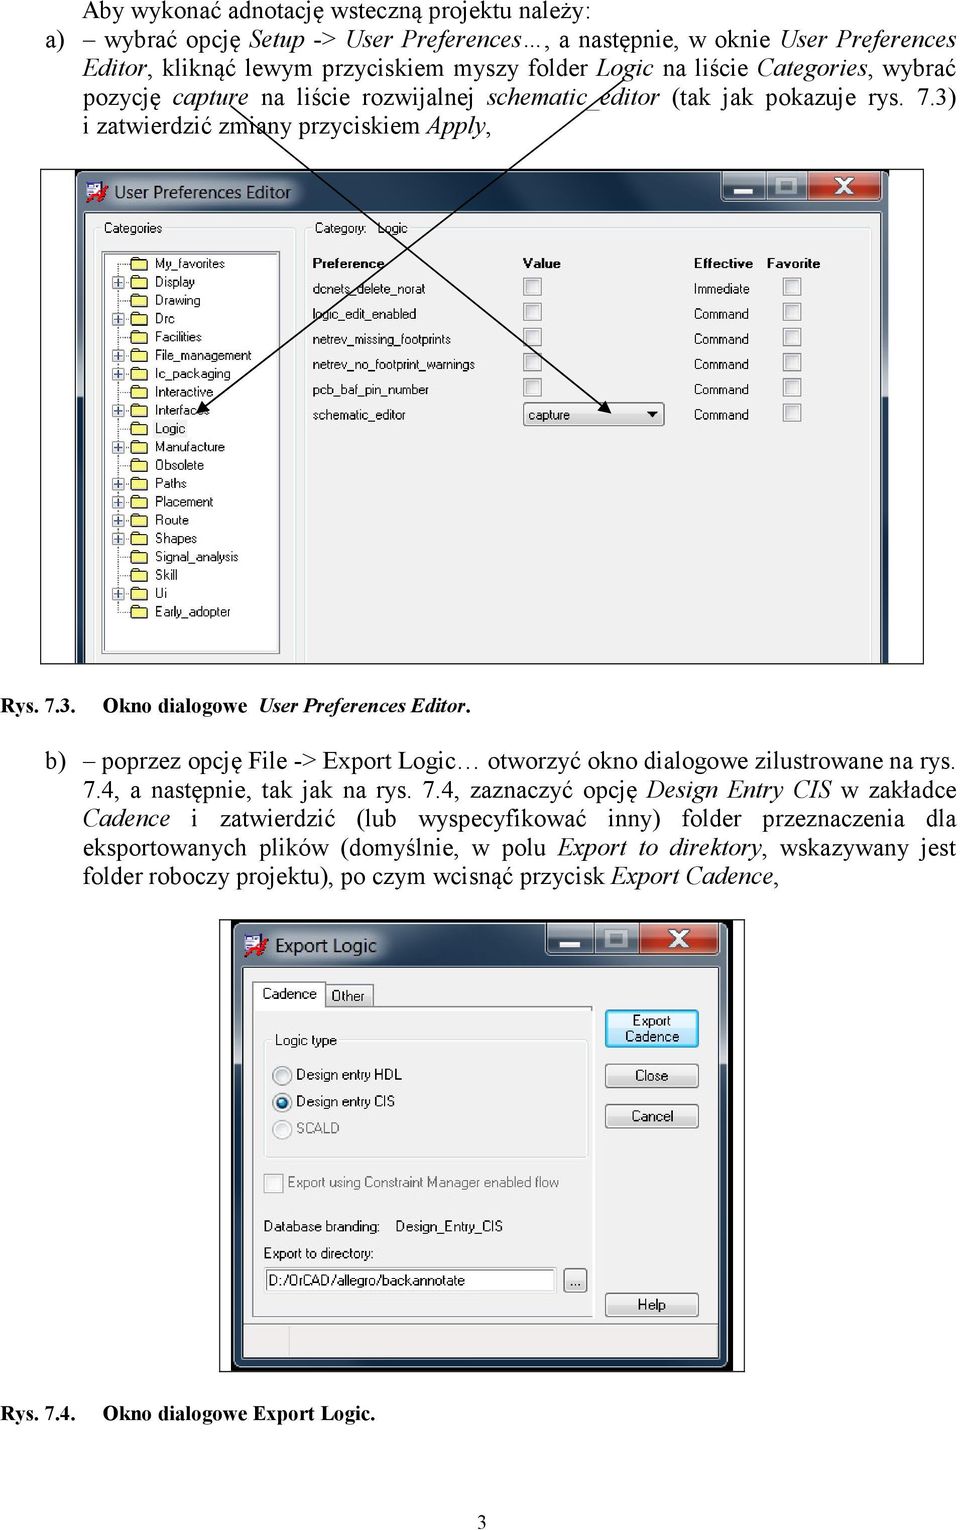 b) poprzez opcję File -> Export Logic otworzyć okno dialogowe zilustrowane na rys. 7.